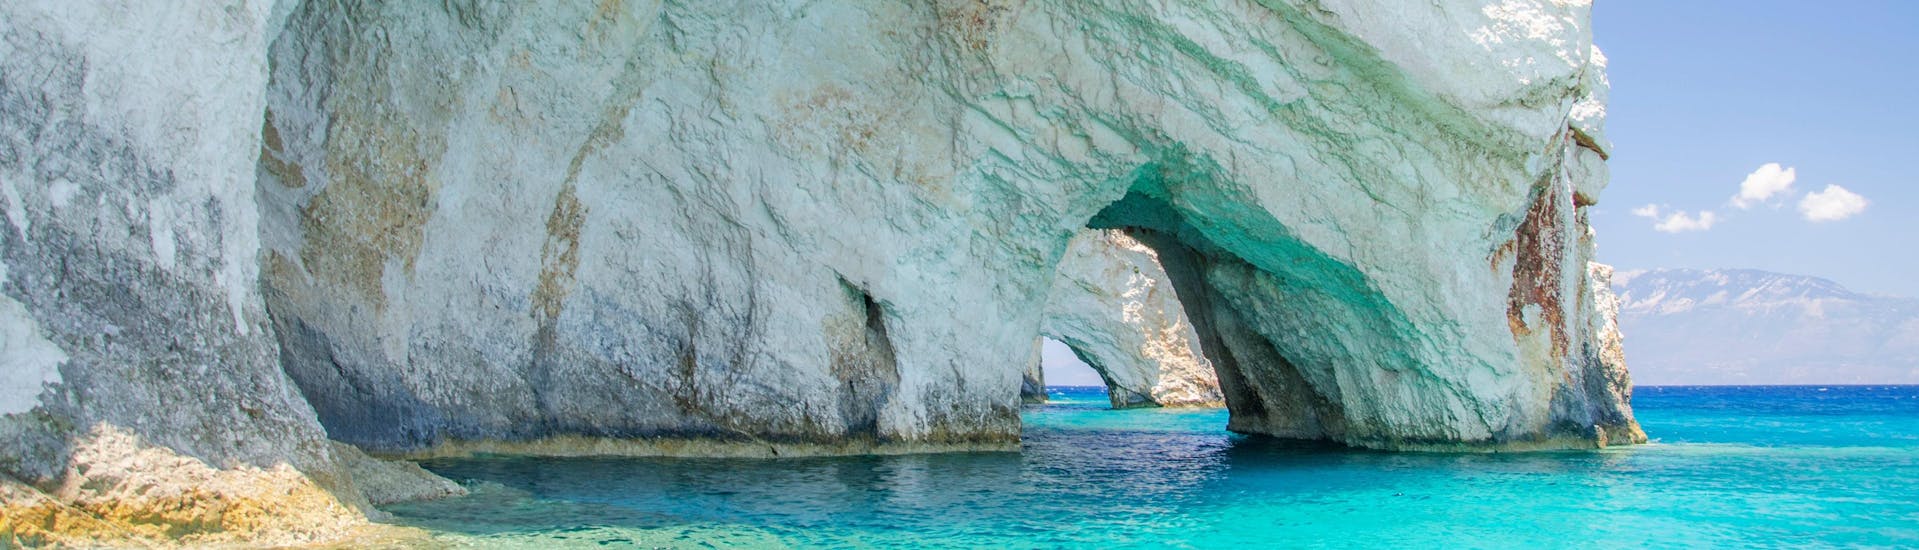 Las impresionantes Cuevas Azules, un destino popular de los paseos en Zakynthos.